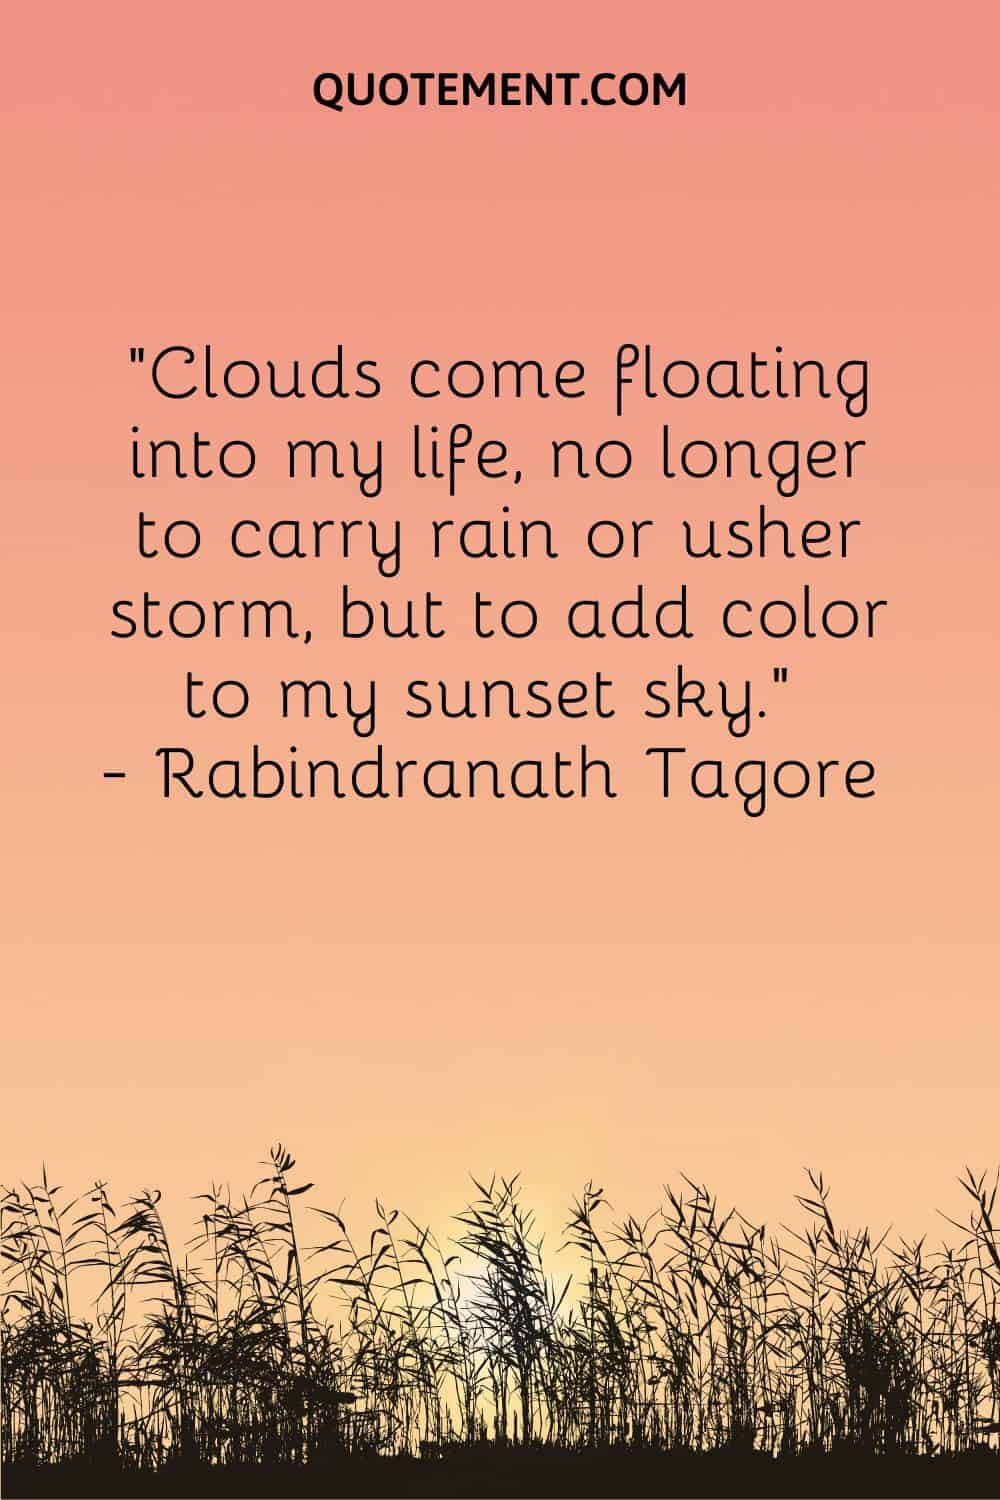 Las nubes llegan flotando a mi vida, ya no para llevar la lluvia o anunciar la tormenta, sino para dar color a mi cielo al atardecer